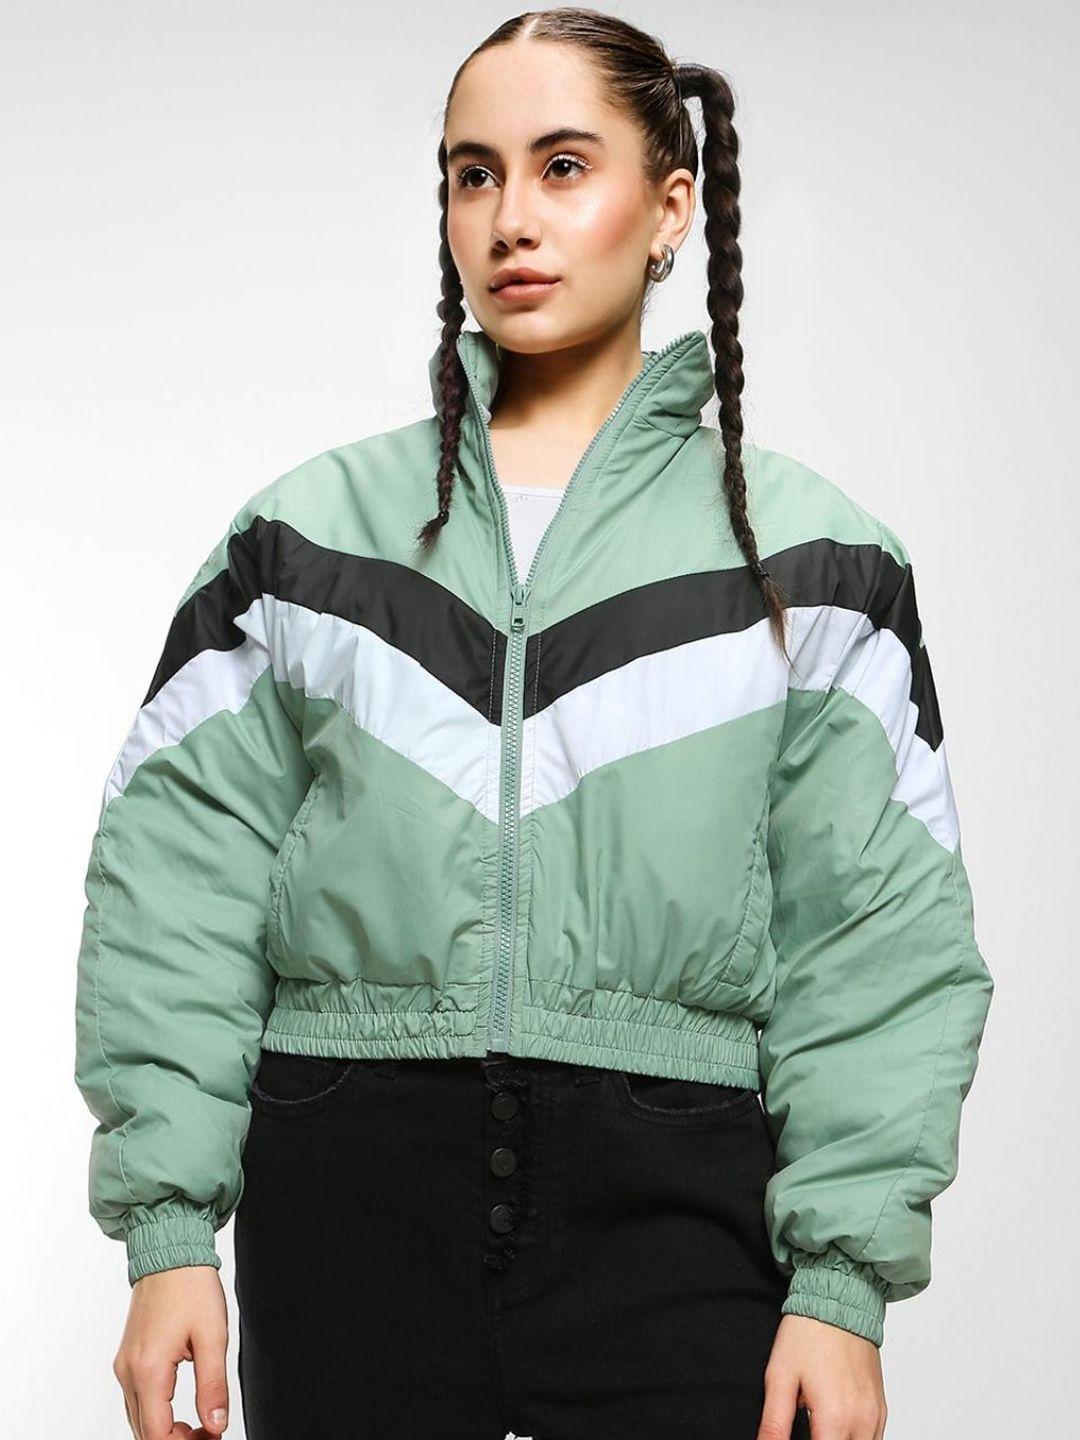 bewakoof women colourblocked crop puffer jacket